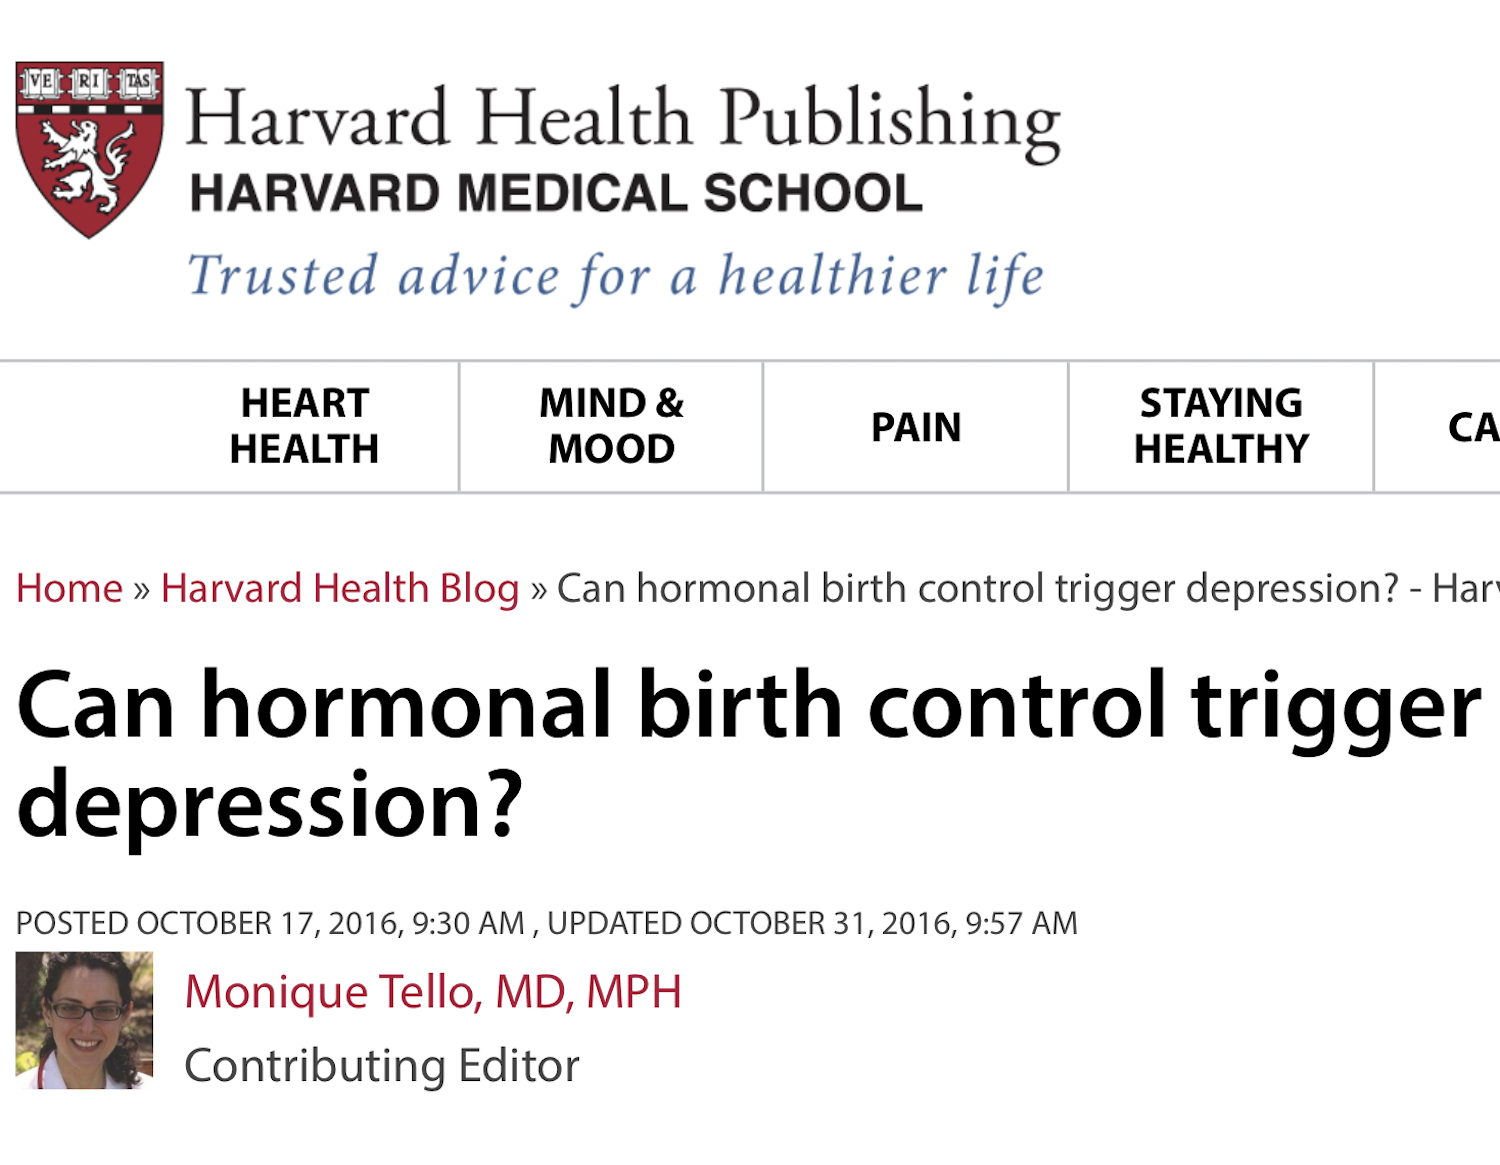 October 17, 2016 - Harvard Health Blog